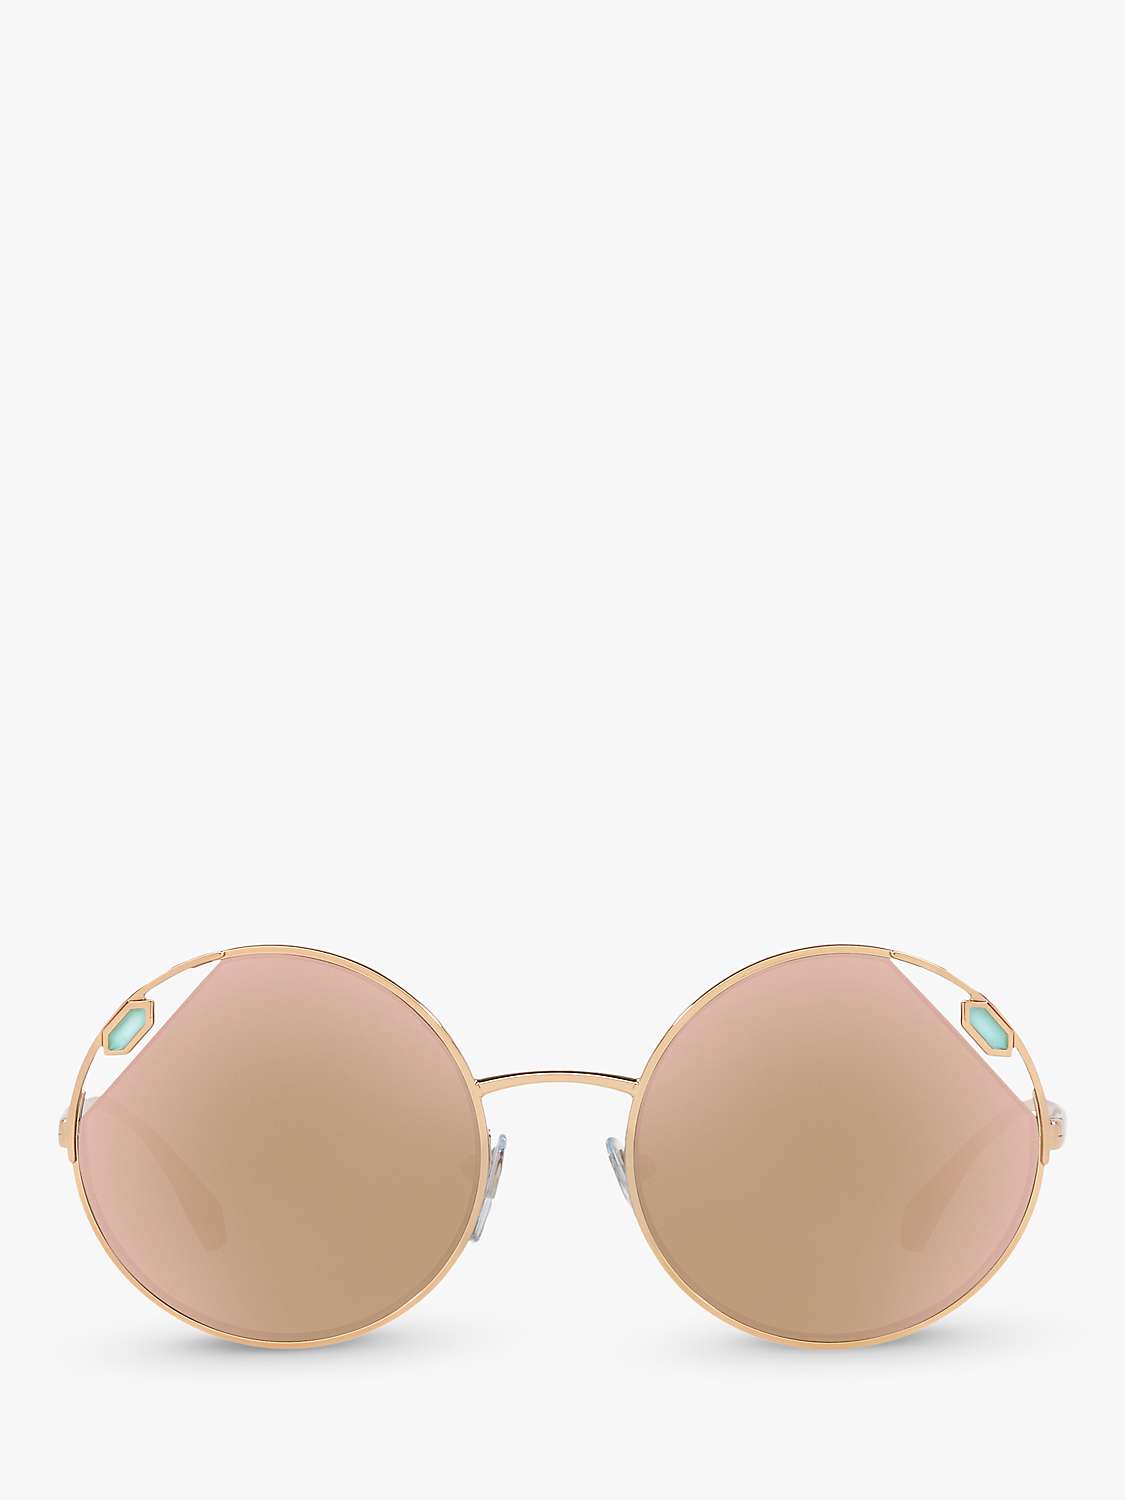 Buy BVLGARI BV6159 Women's Round Sunglasses Online at johnlewis.com